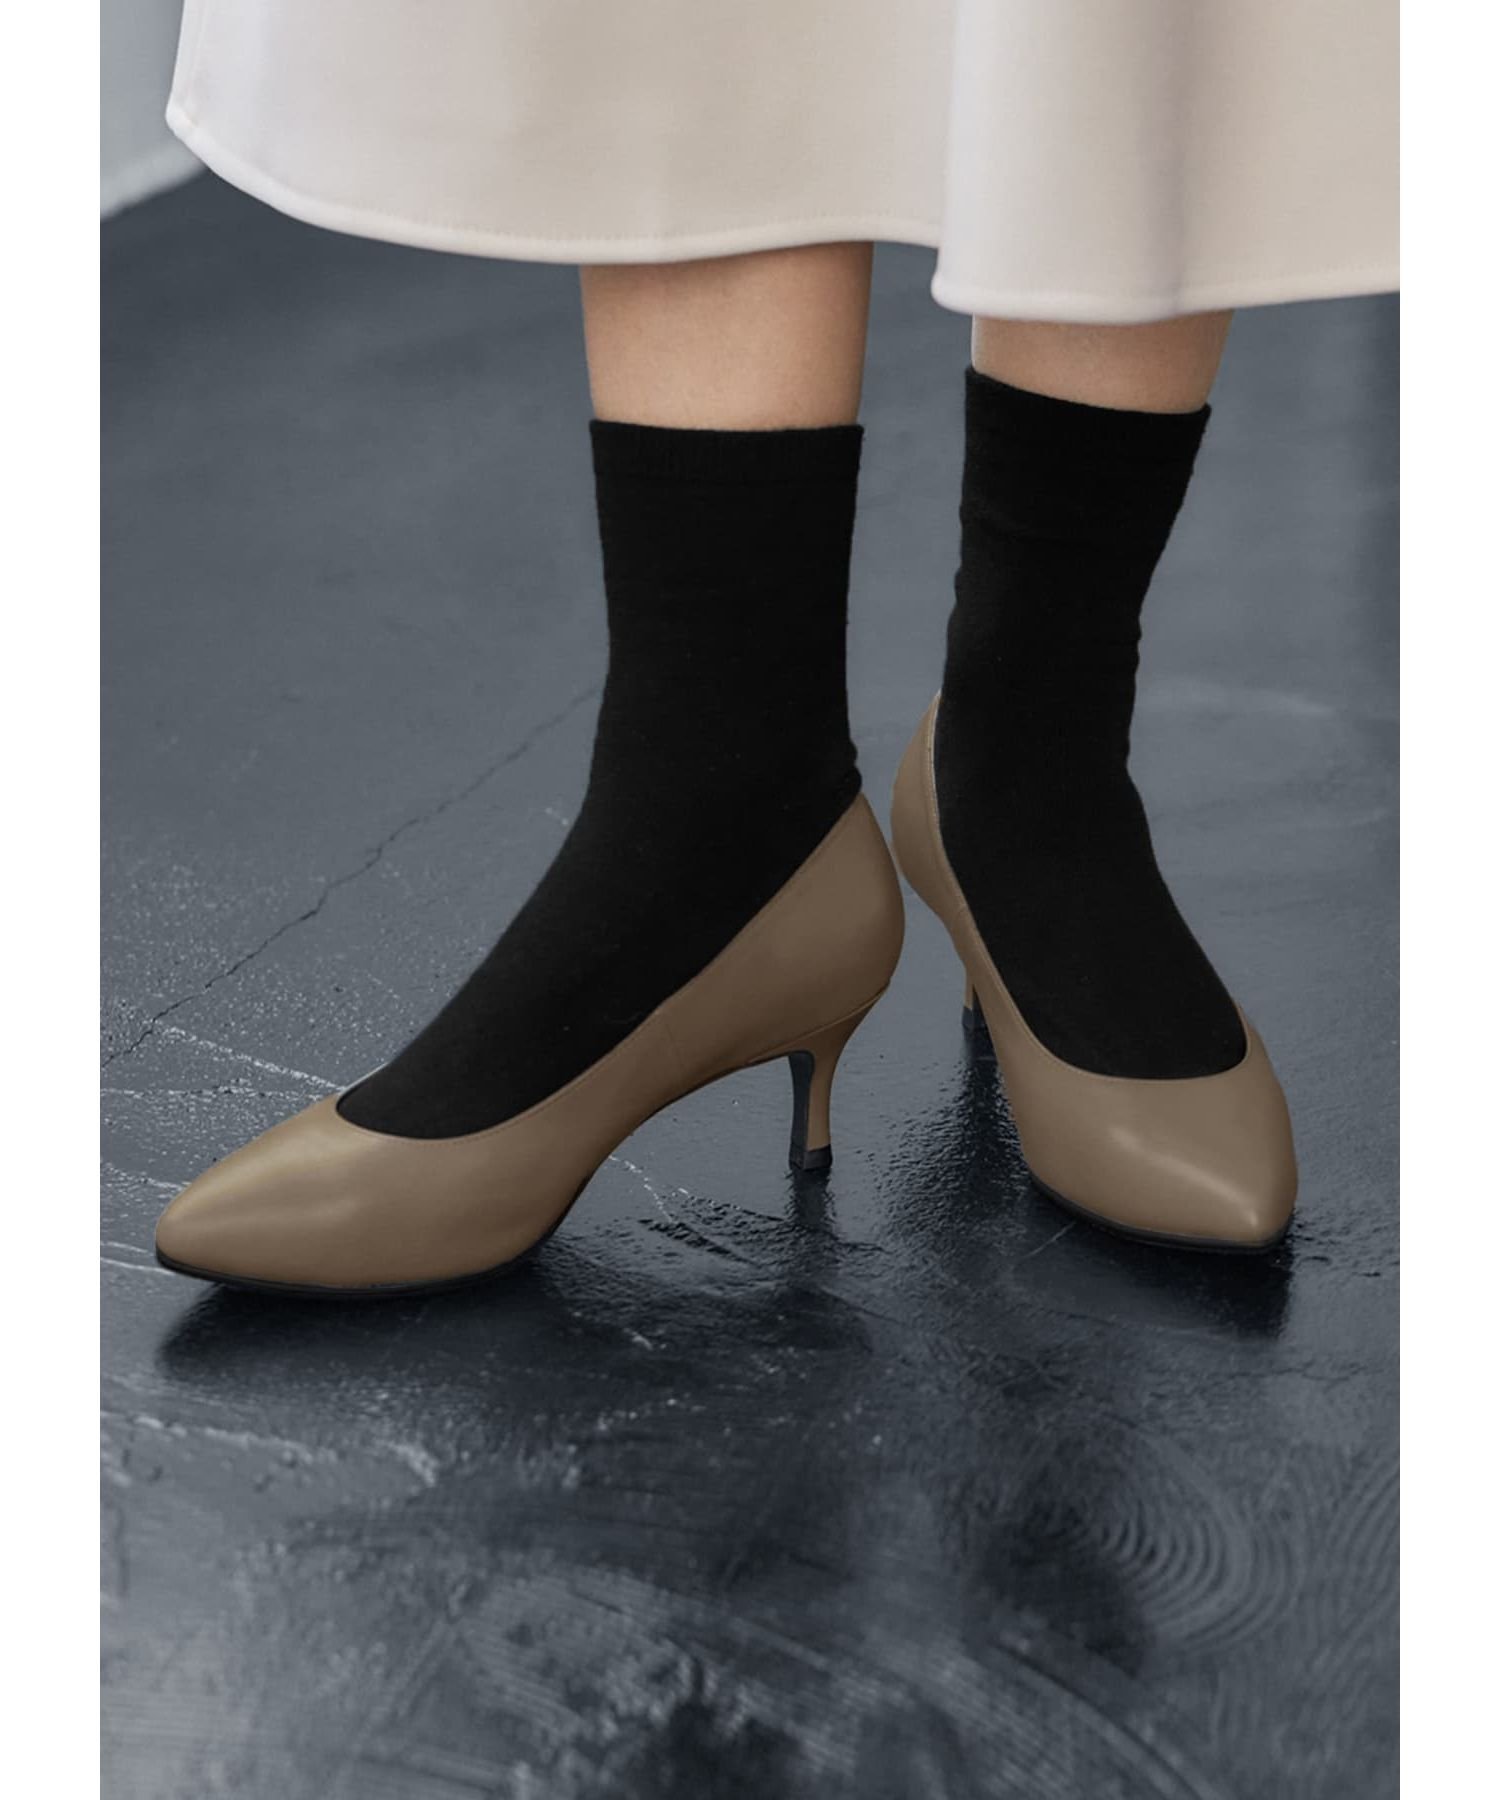 STYLE DELI 【Made in JAPAN】5cmヒールコンフォートパンプス スタイルデリ シューズ・靴 パンプス ブラック【送料無料】